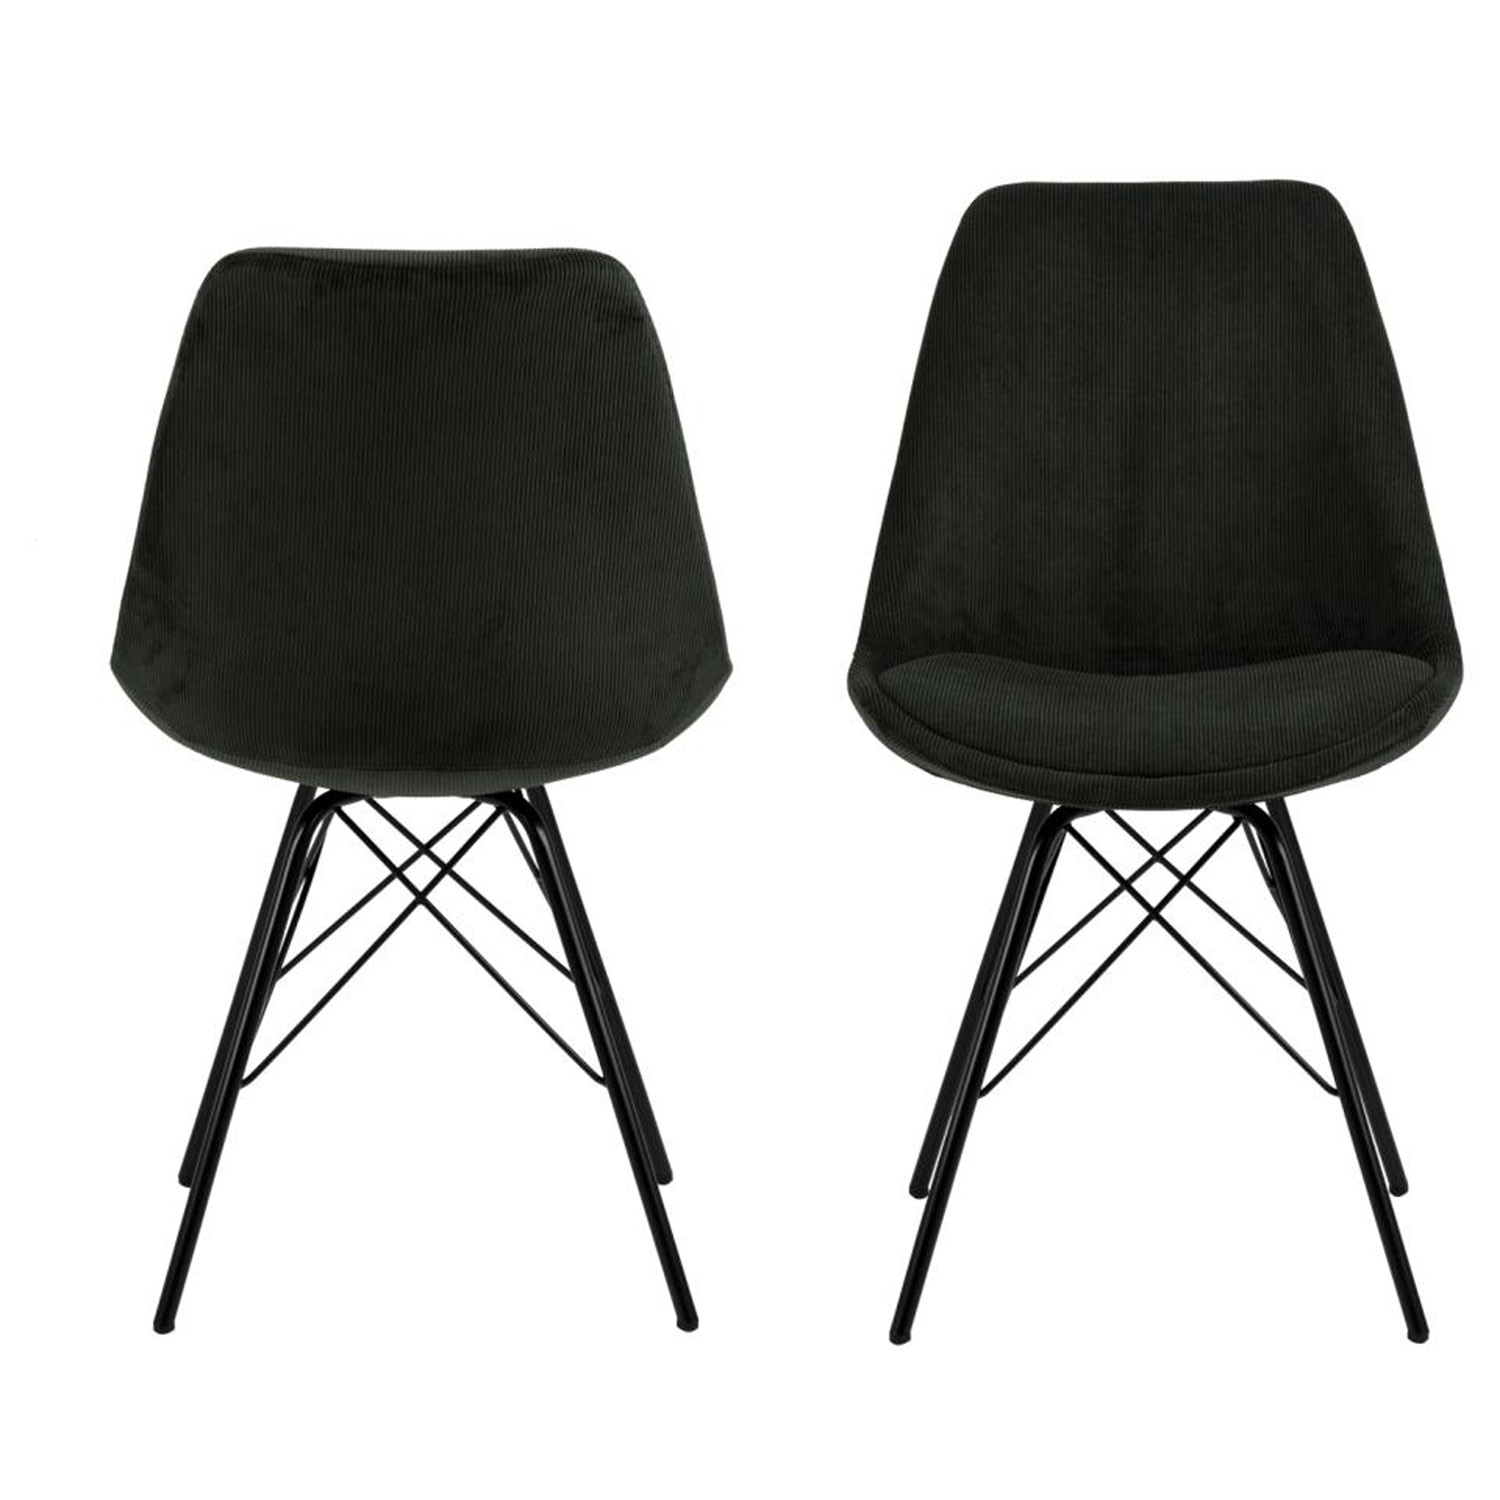 ACT NORDIC Eris spisebordsstol - mørkegrøn stof og sort metal